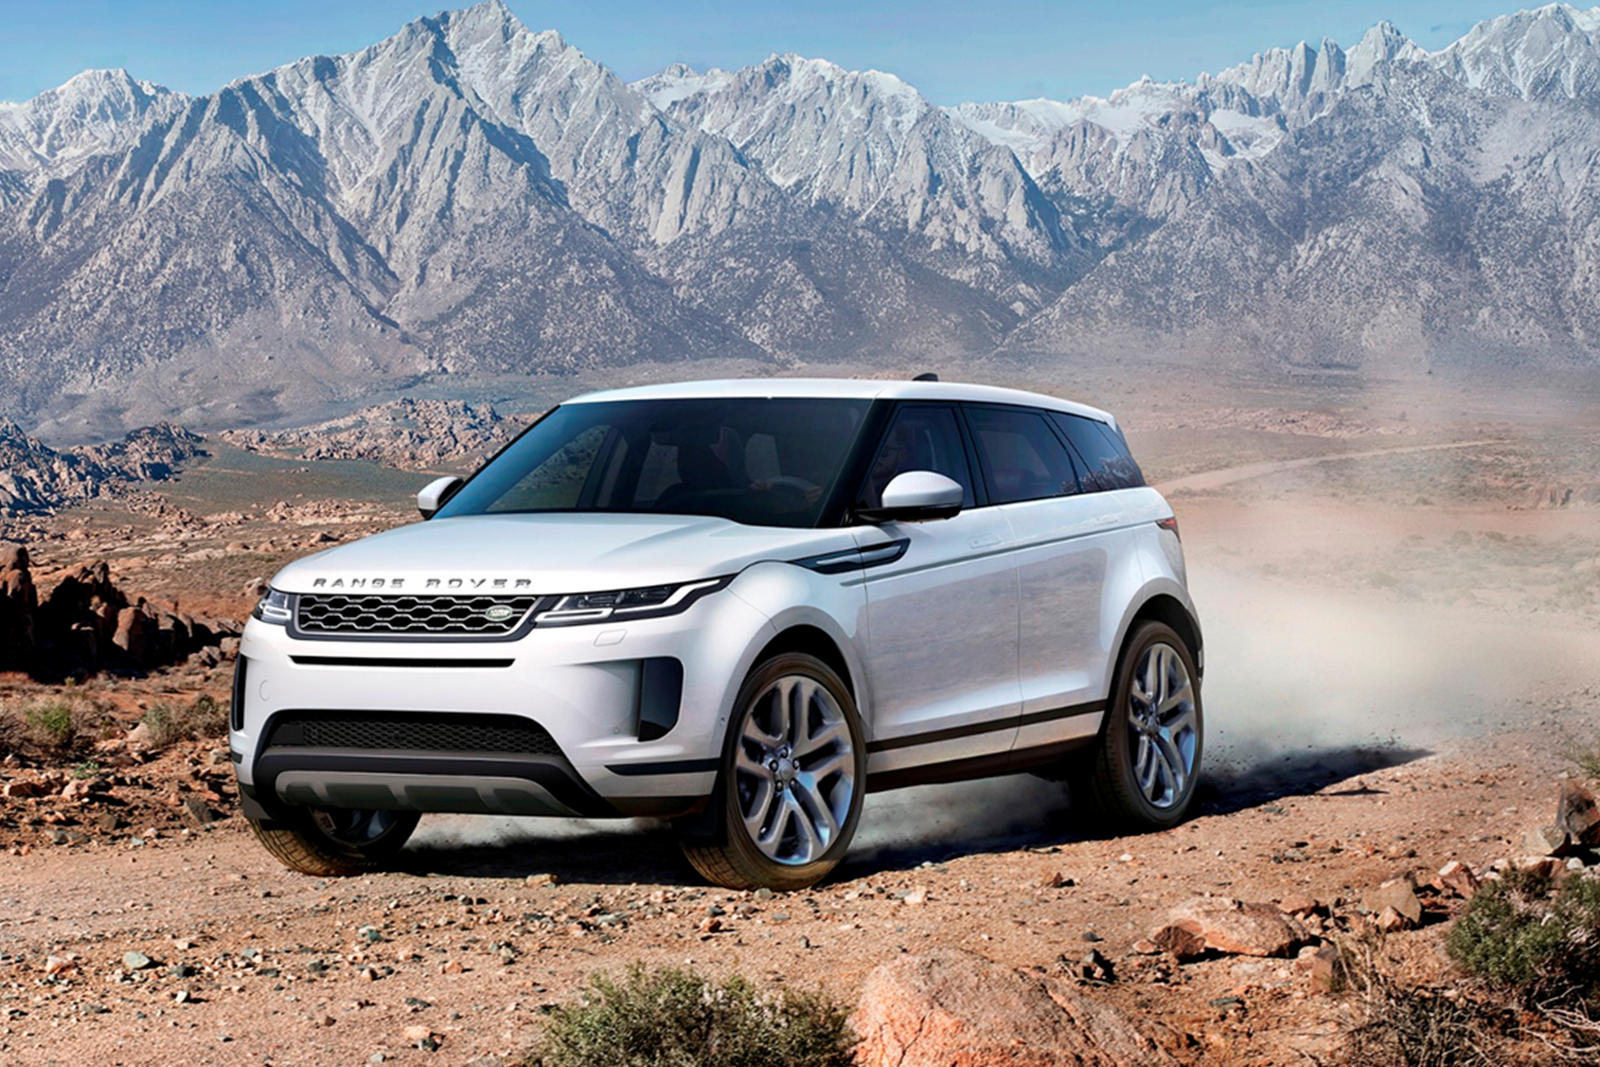 2022 Land Rover Range Rover Evoque Prices, Reviews, and Photos